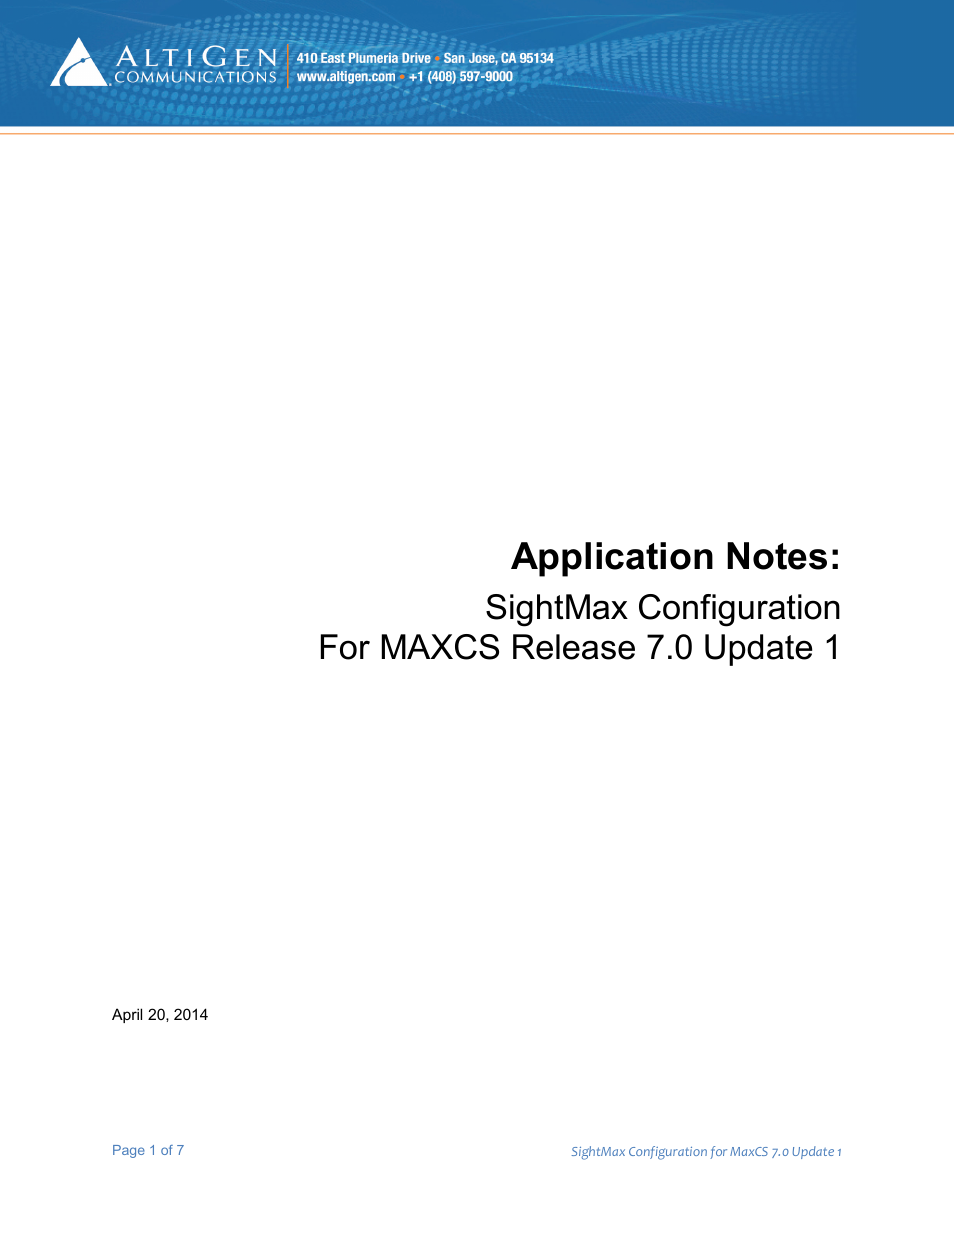 MAXCS 7.0 Update 1 SightMax